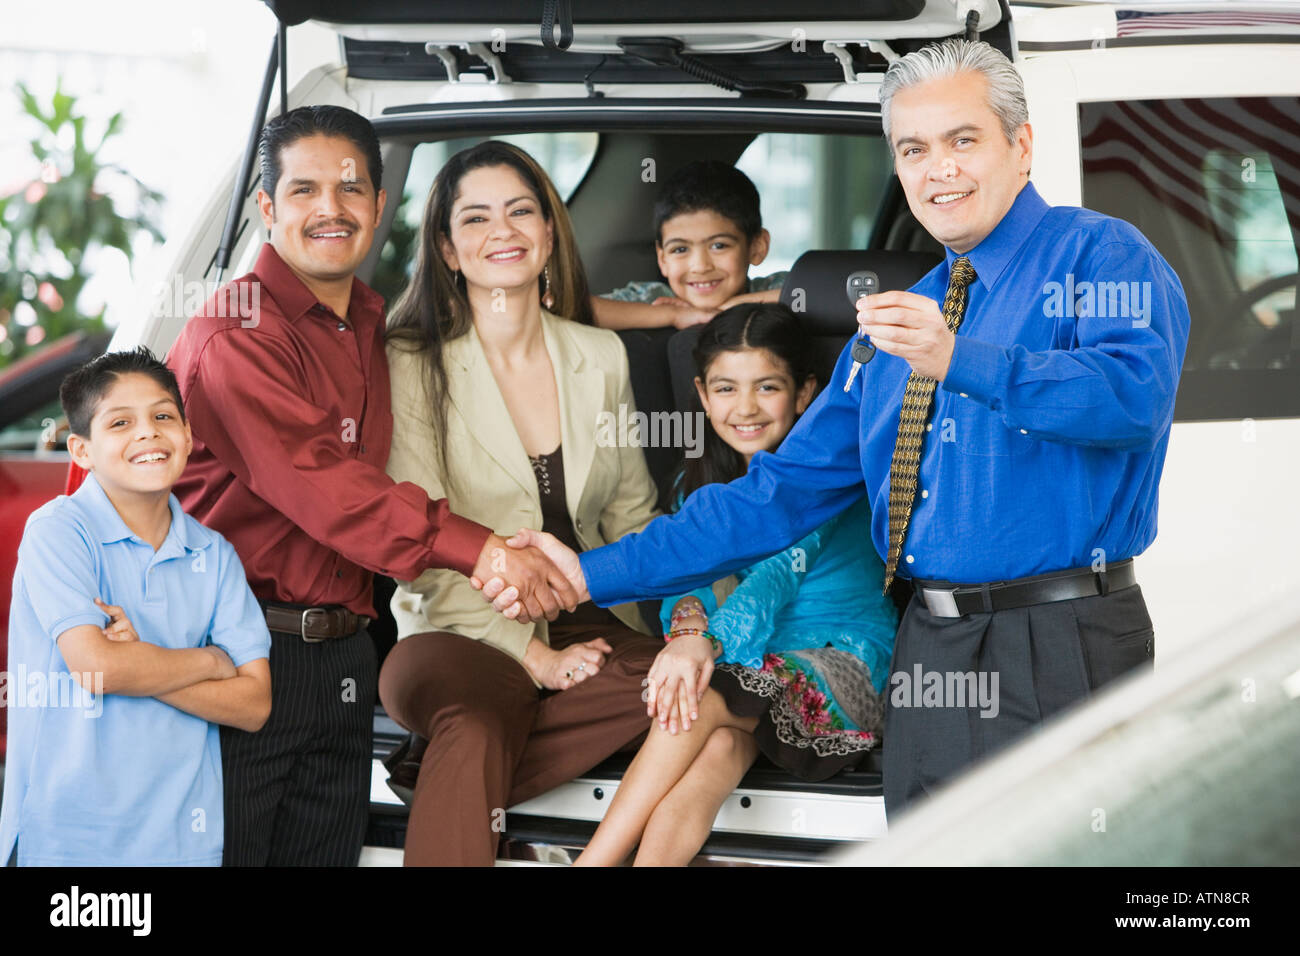 Vendeur de voiture hispaniques remise des clés de voiture dans la famille Banque D'Images